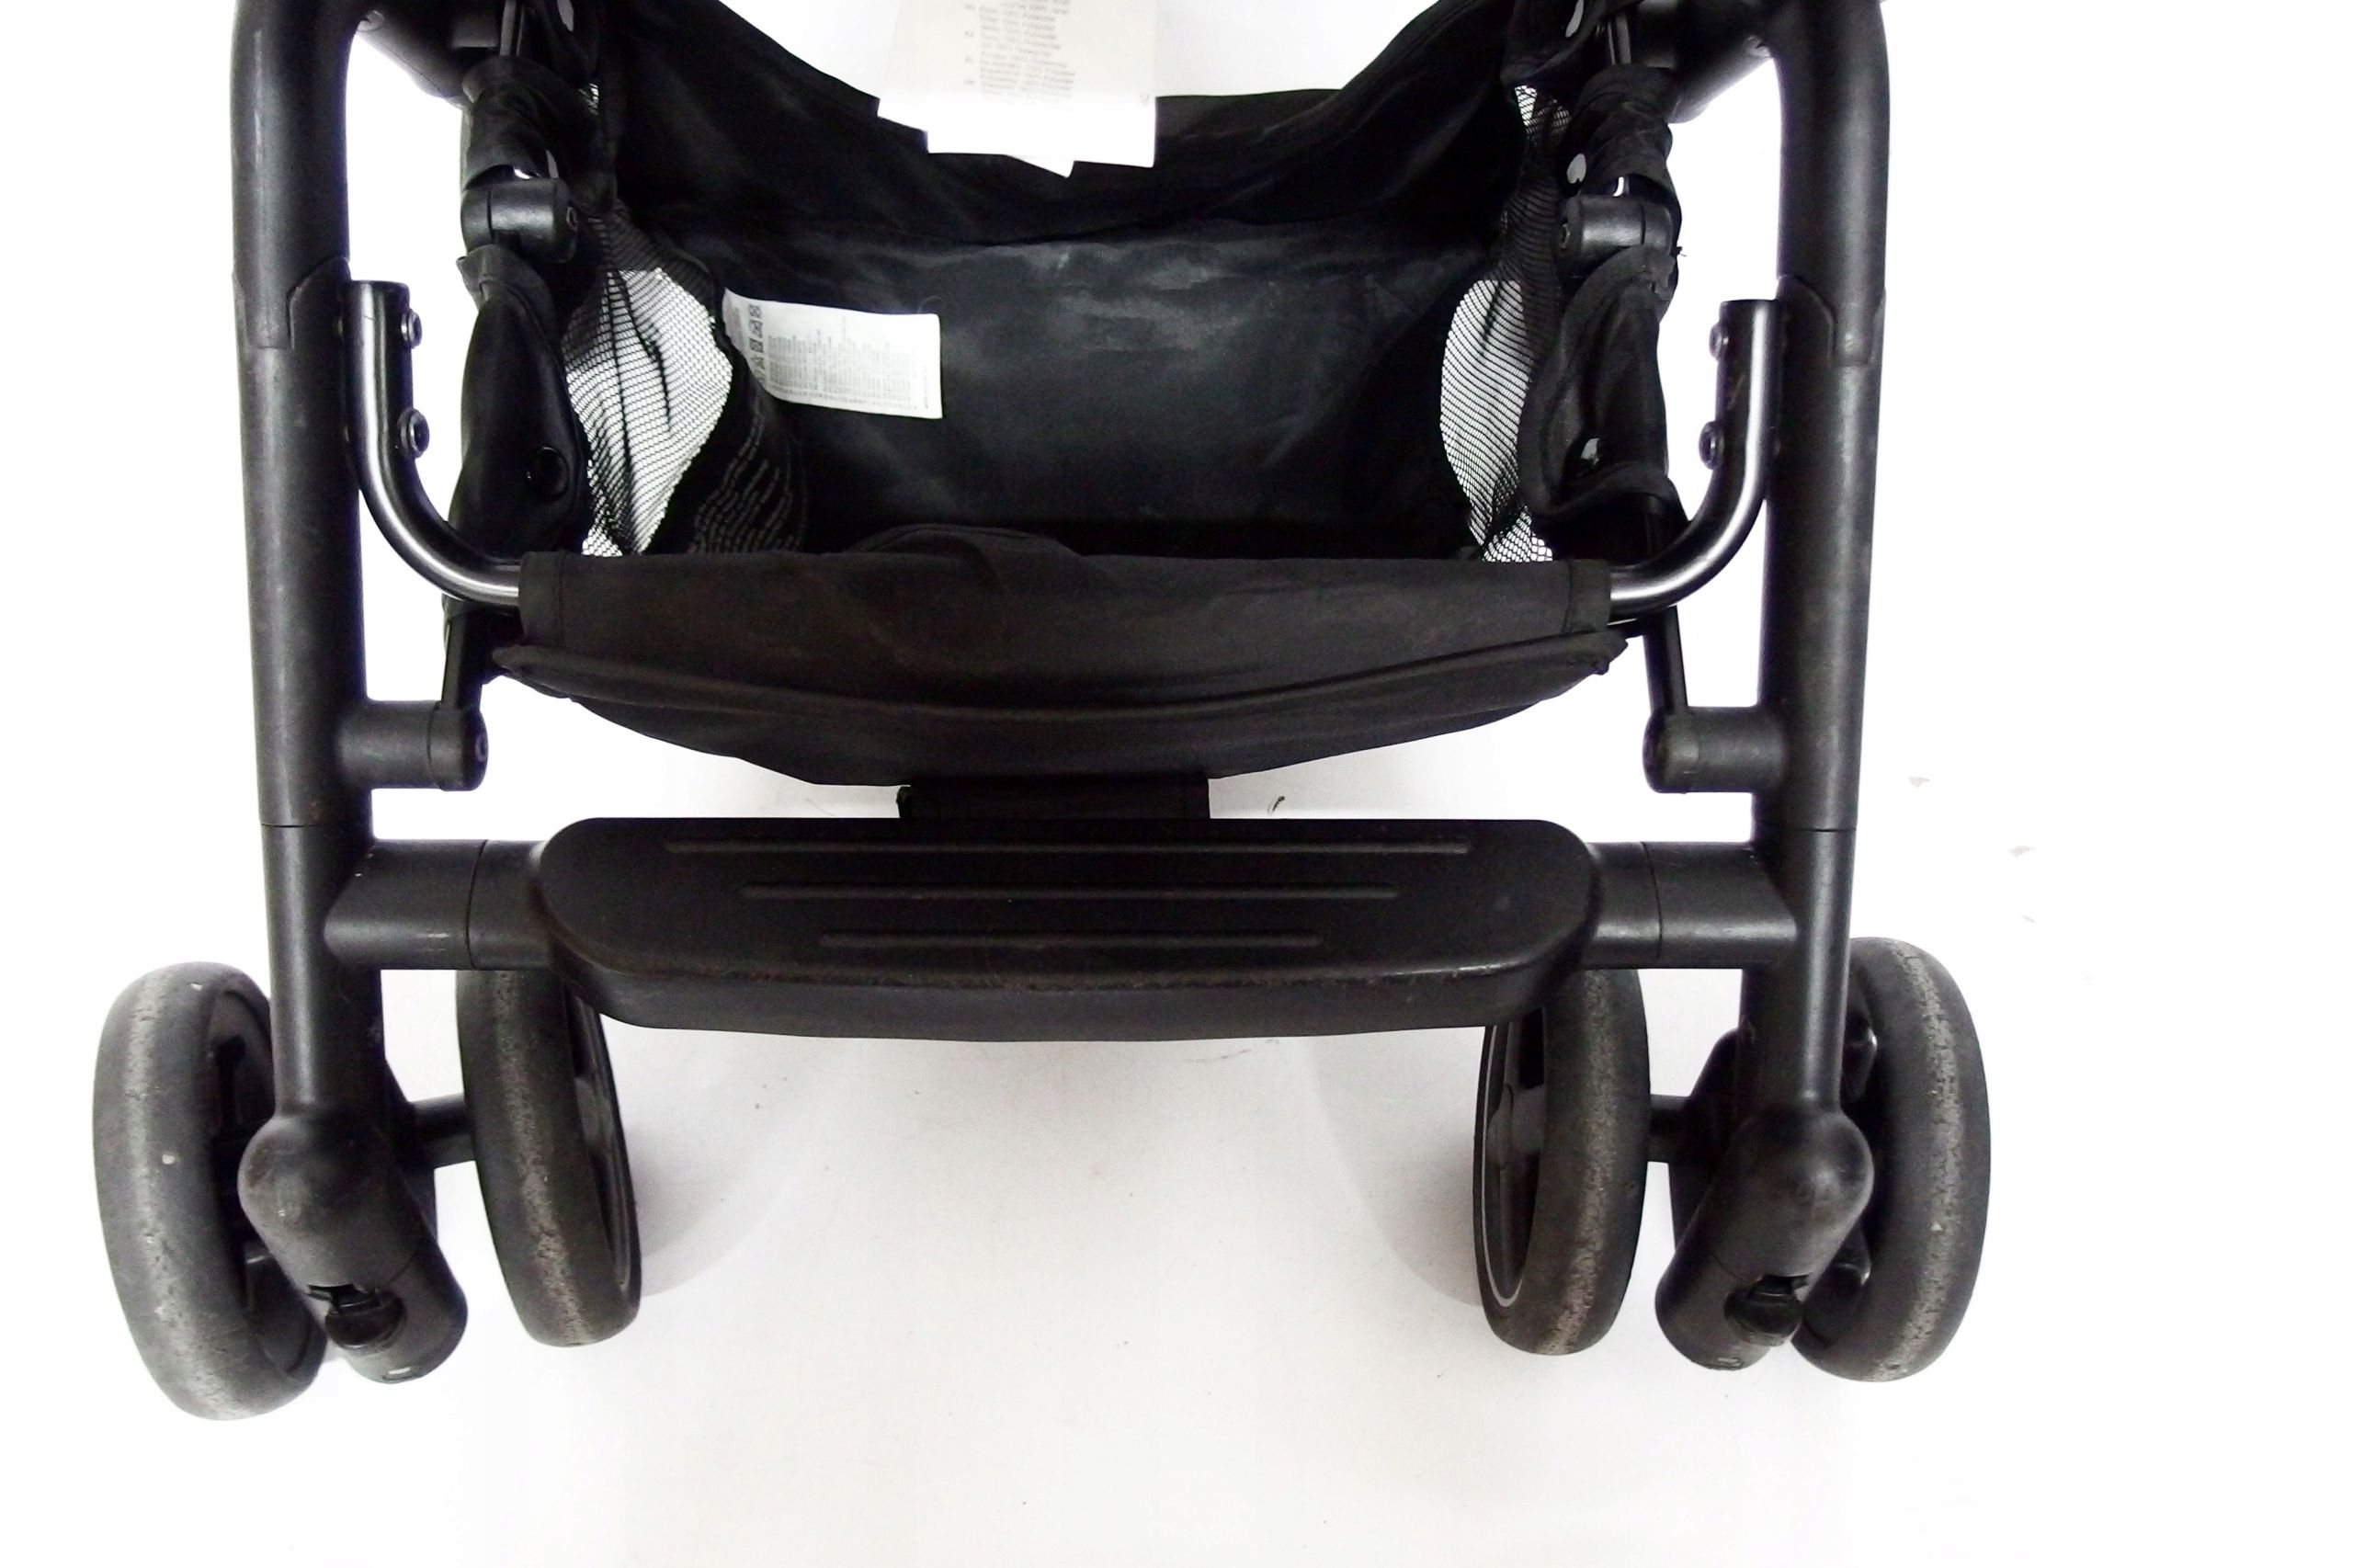 maxi cosi lara 2 wózek spacerowy kompaktowy black